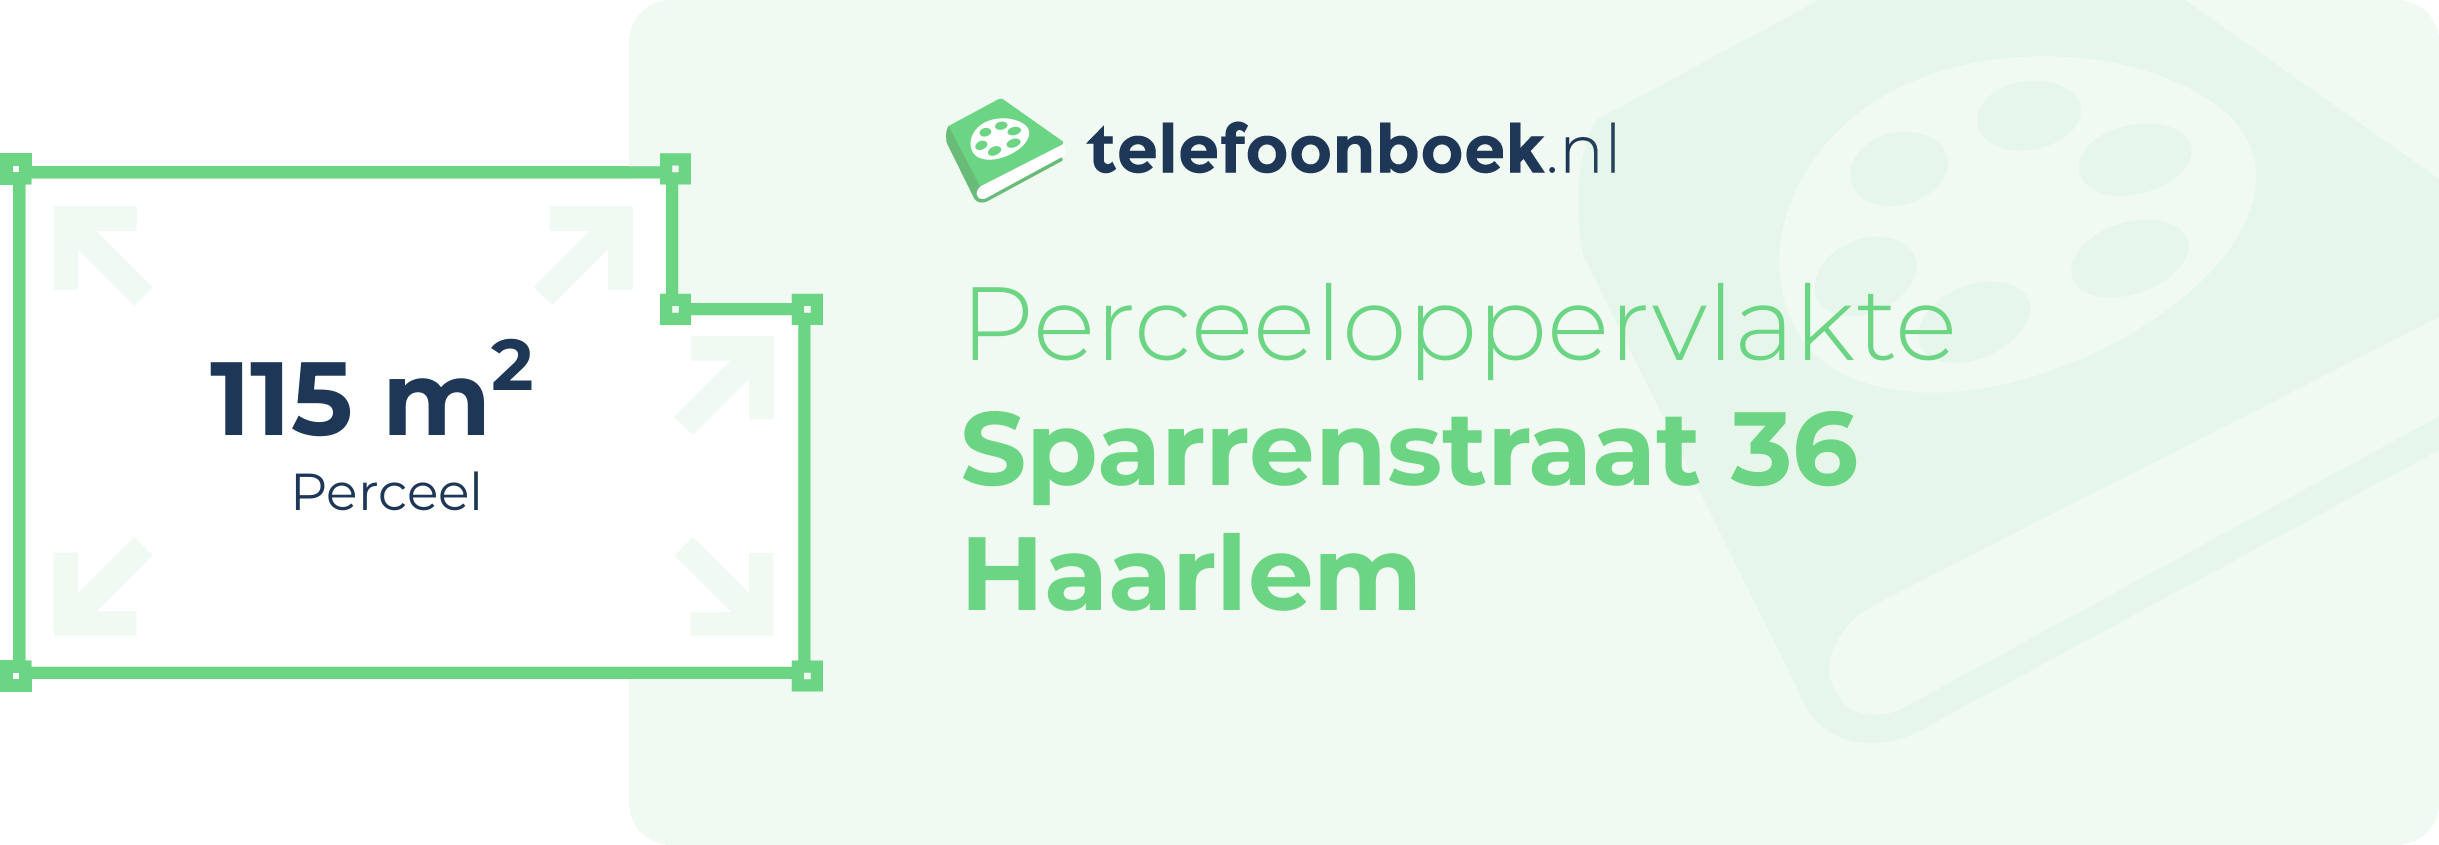 Perceeloppervlakte Sparrenstraat 36 Haarlem